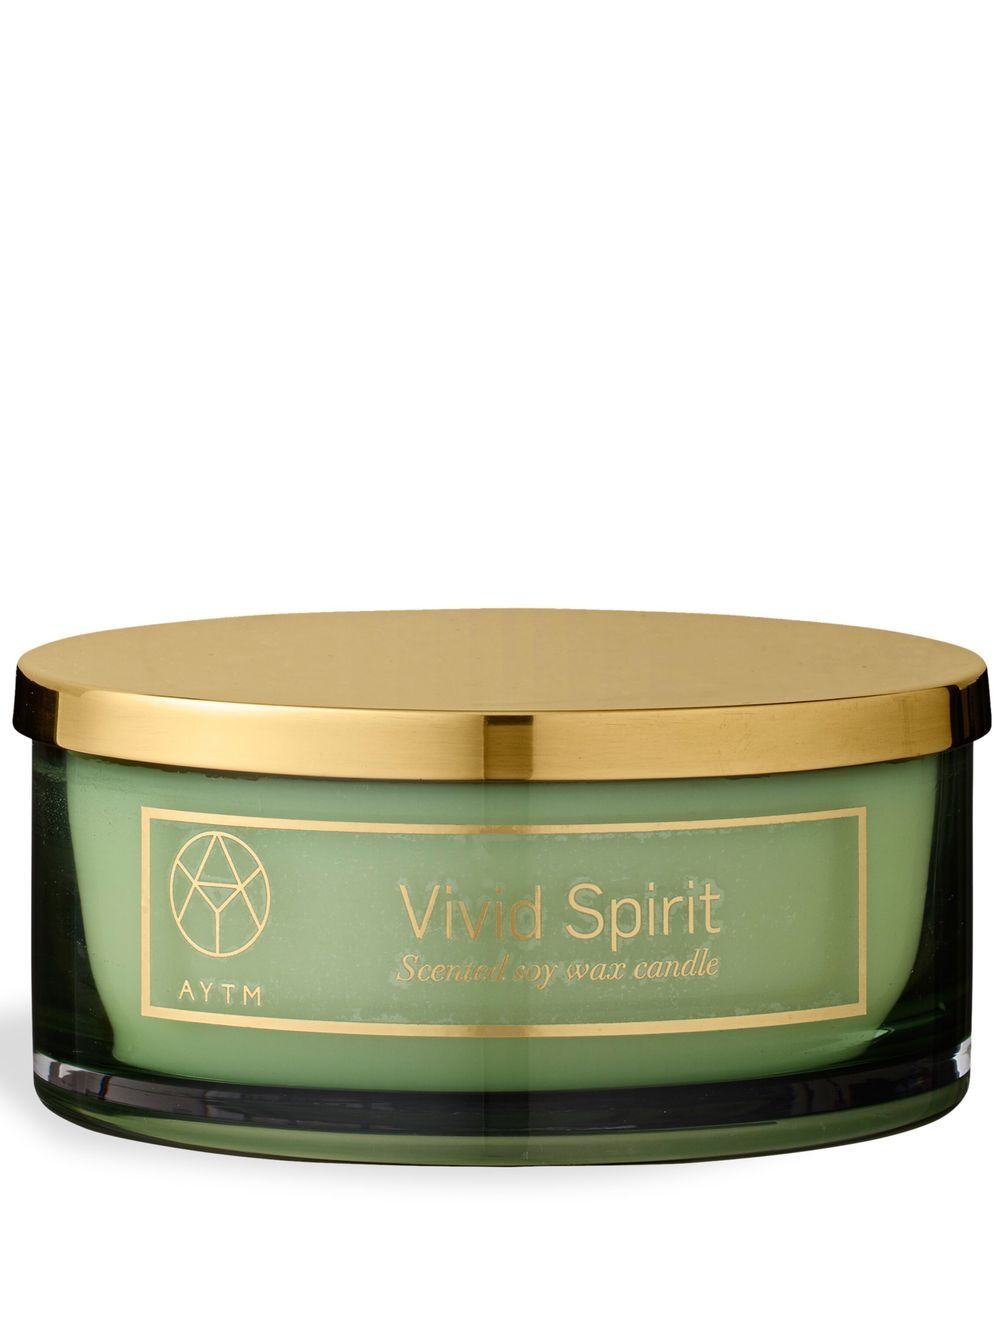 AYTM Vivid Spirit candle - Green von AYTM